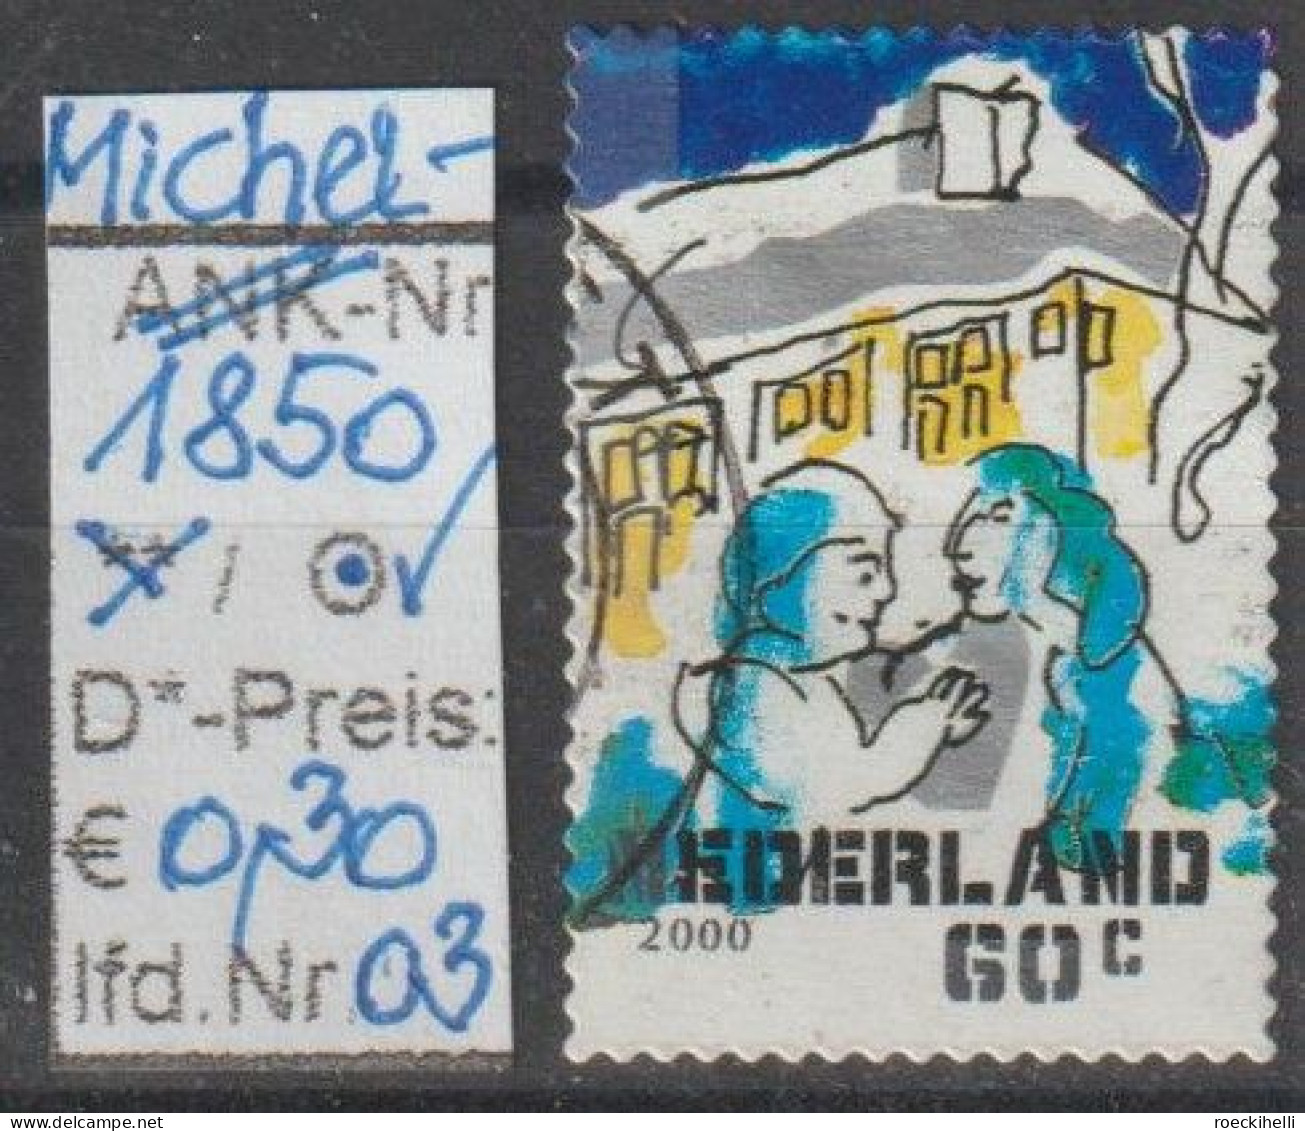 2000 - NIEDERLANDE - FM/DM "Dez.marken-Paar Vor Haus" 60 C Mehrf. - S. Scan  (1850o 01-03 Nl) - Used Stamps